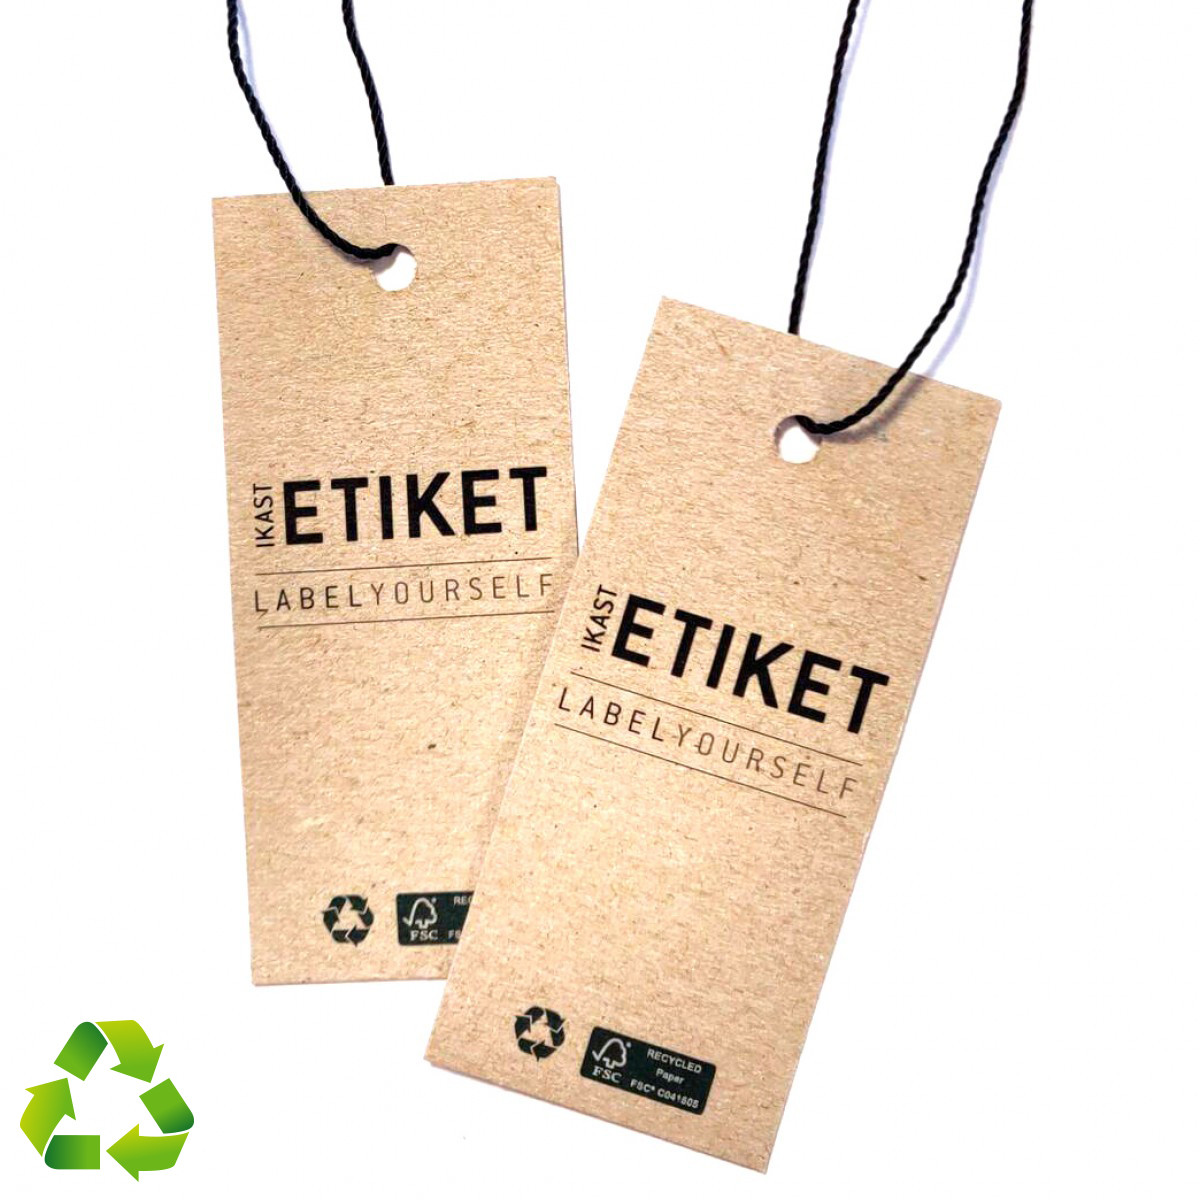 Etiquetas personalizadas hecho a mano, cartón reciclado - Trashy World